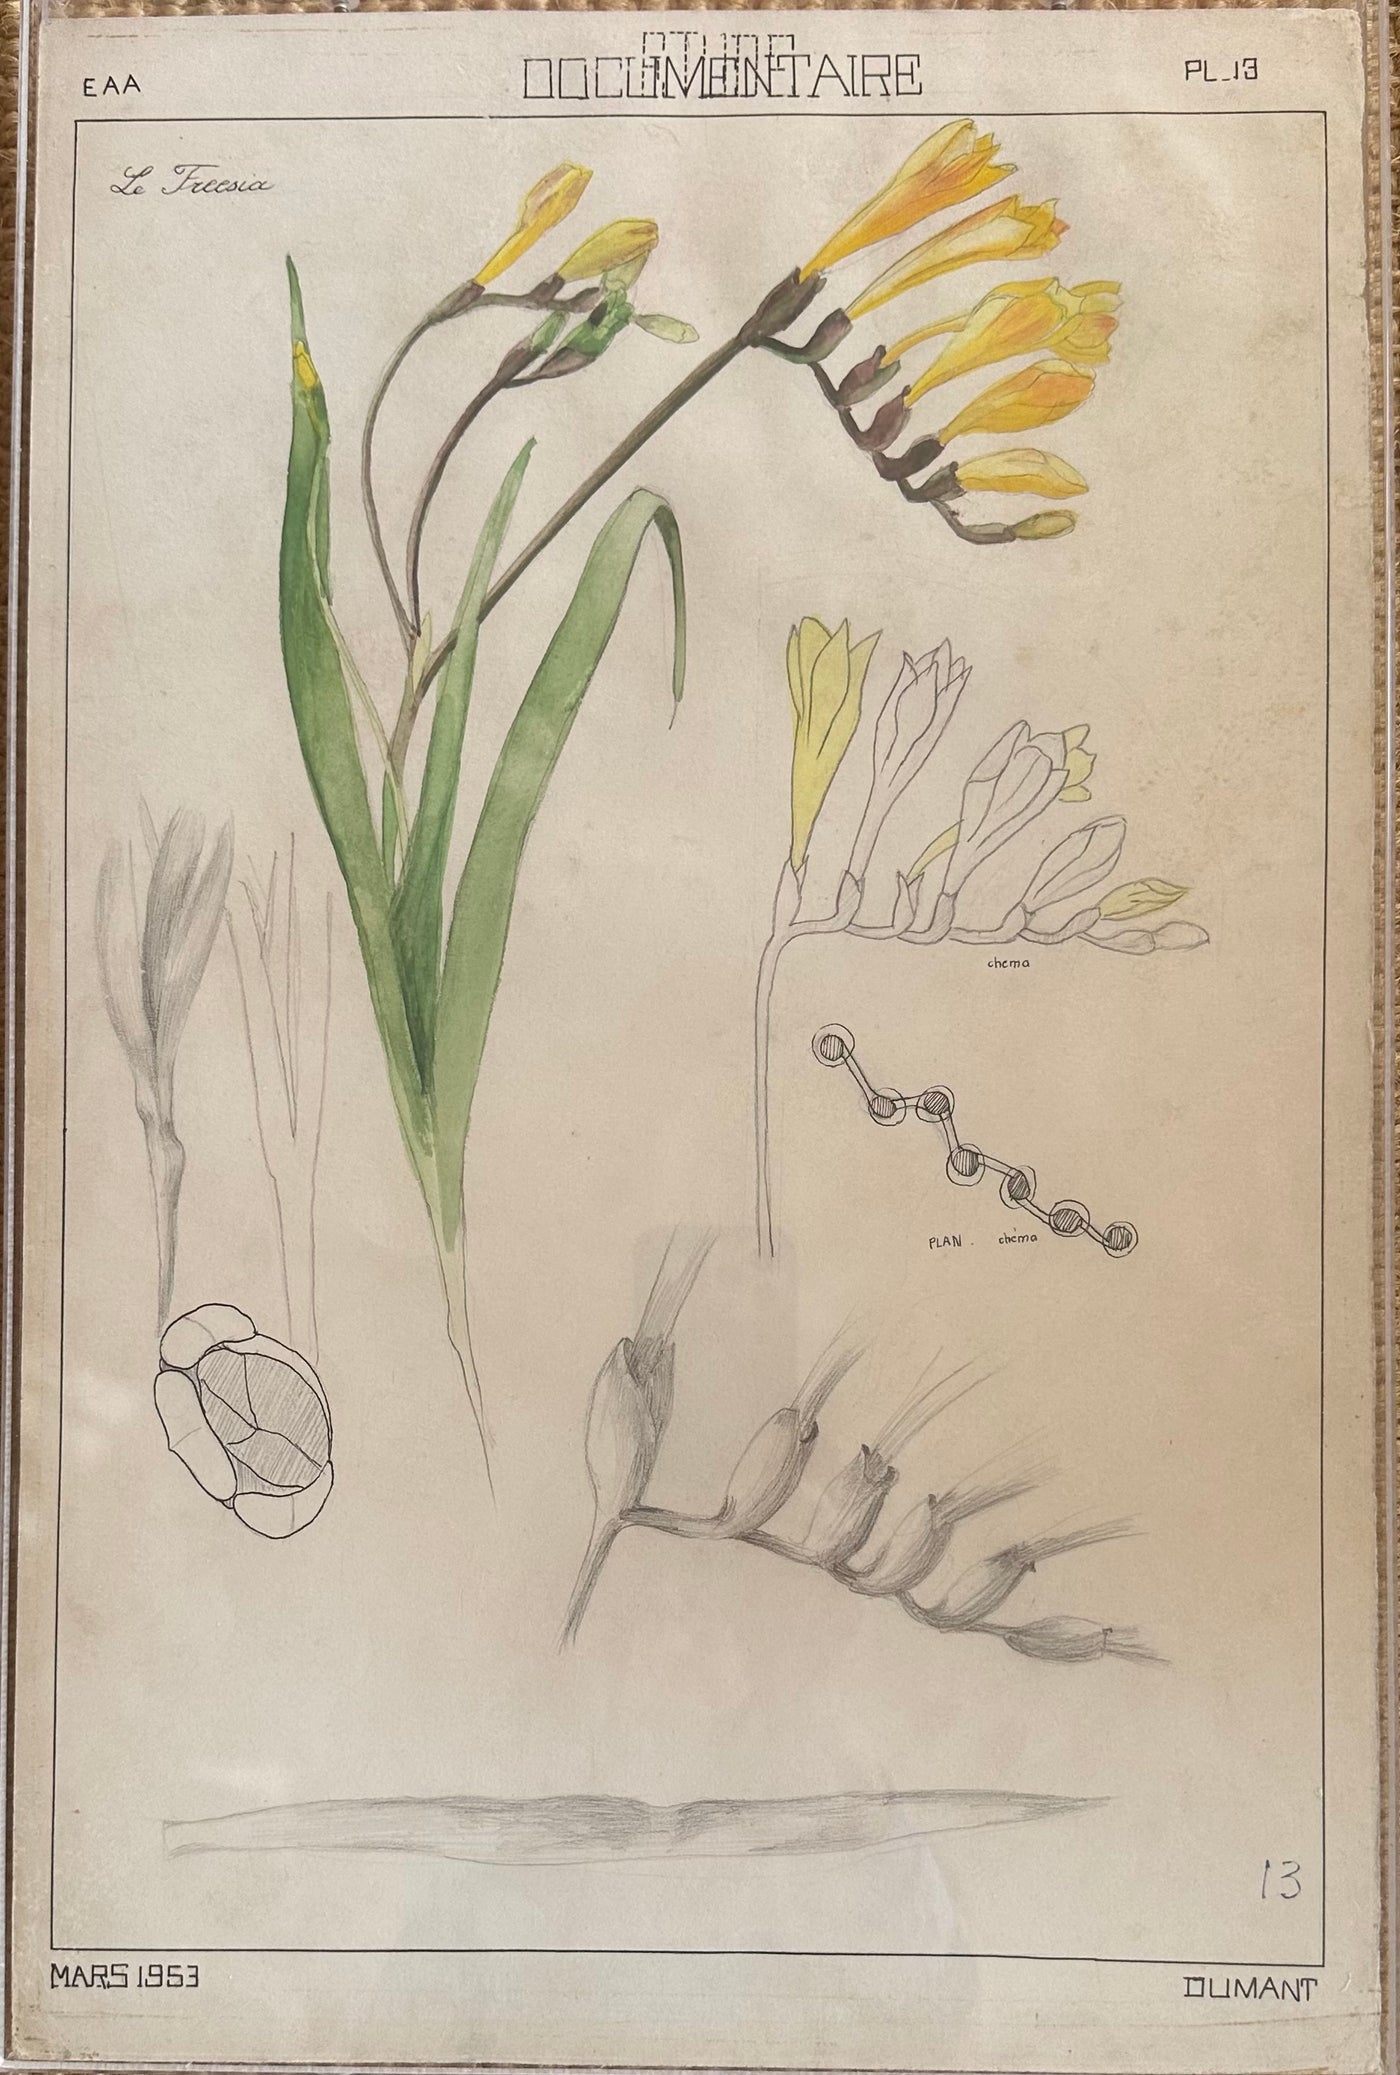 Daffodil Study